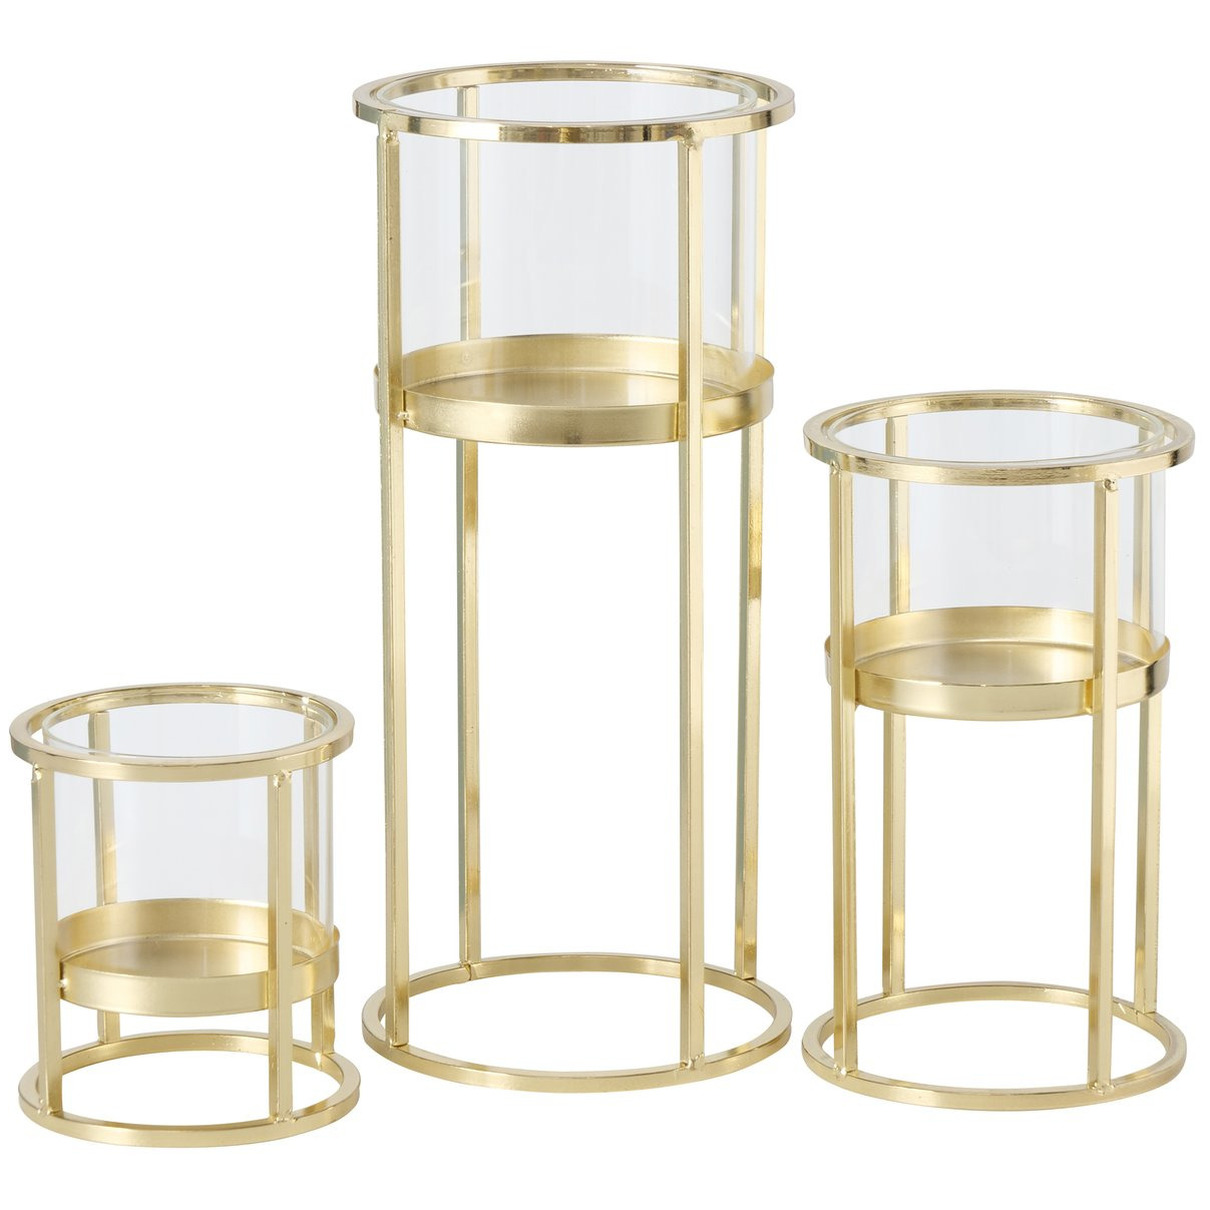 Metalen design kaarsenhouder champagne goud set van 3x stuks